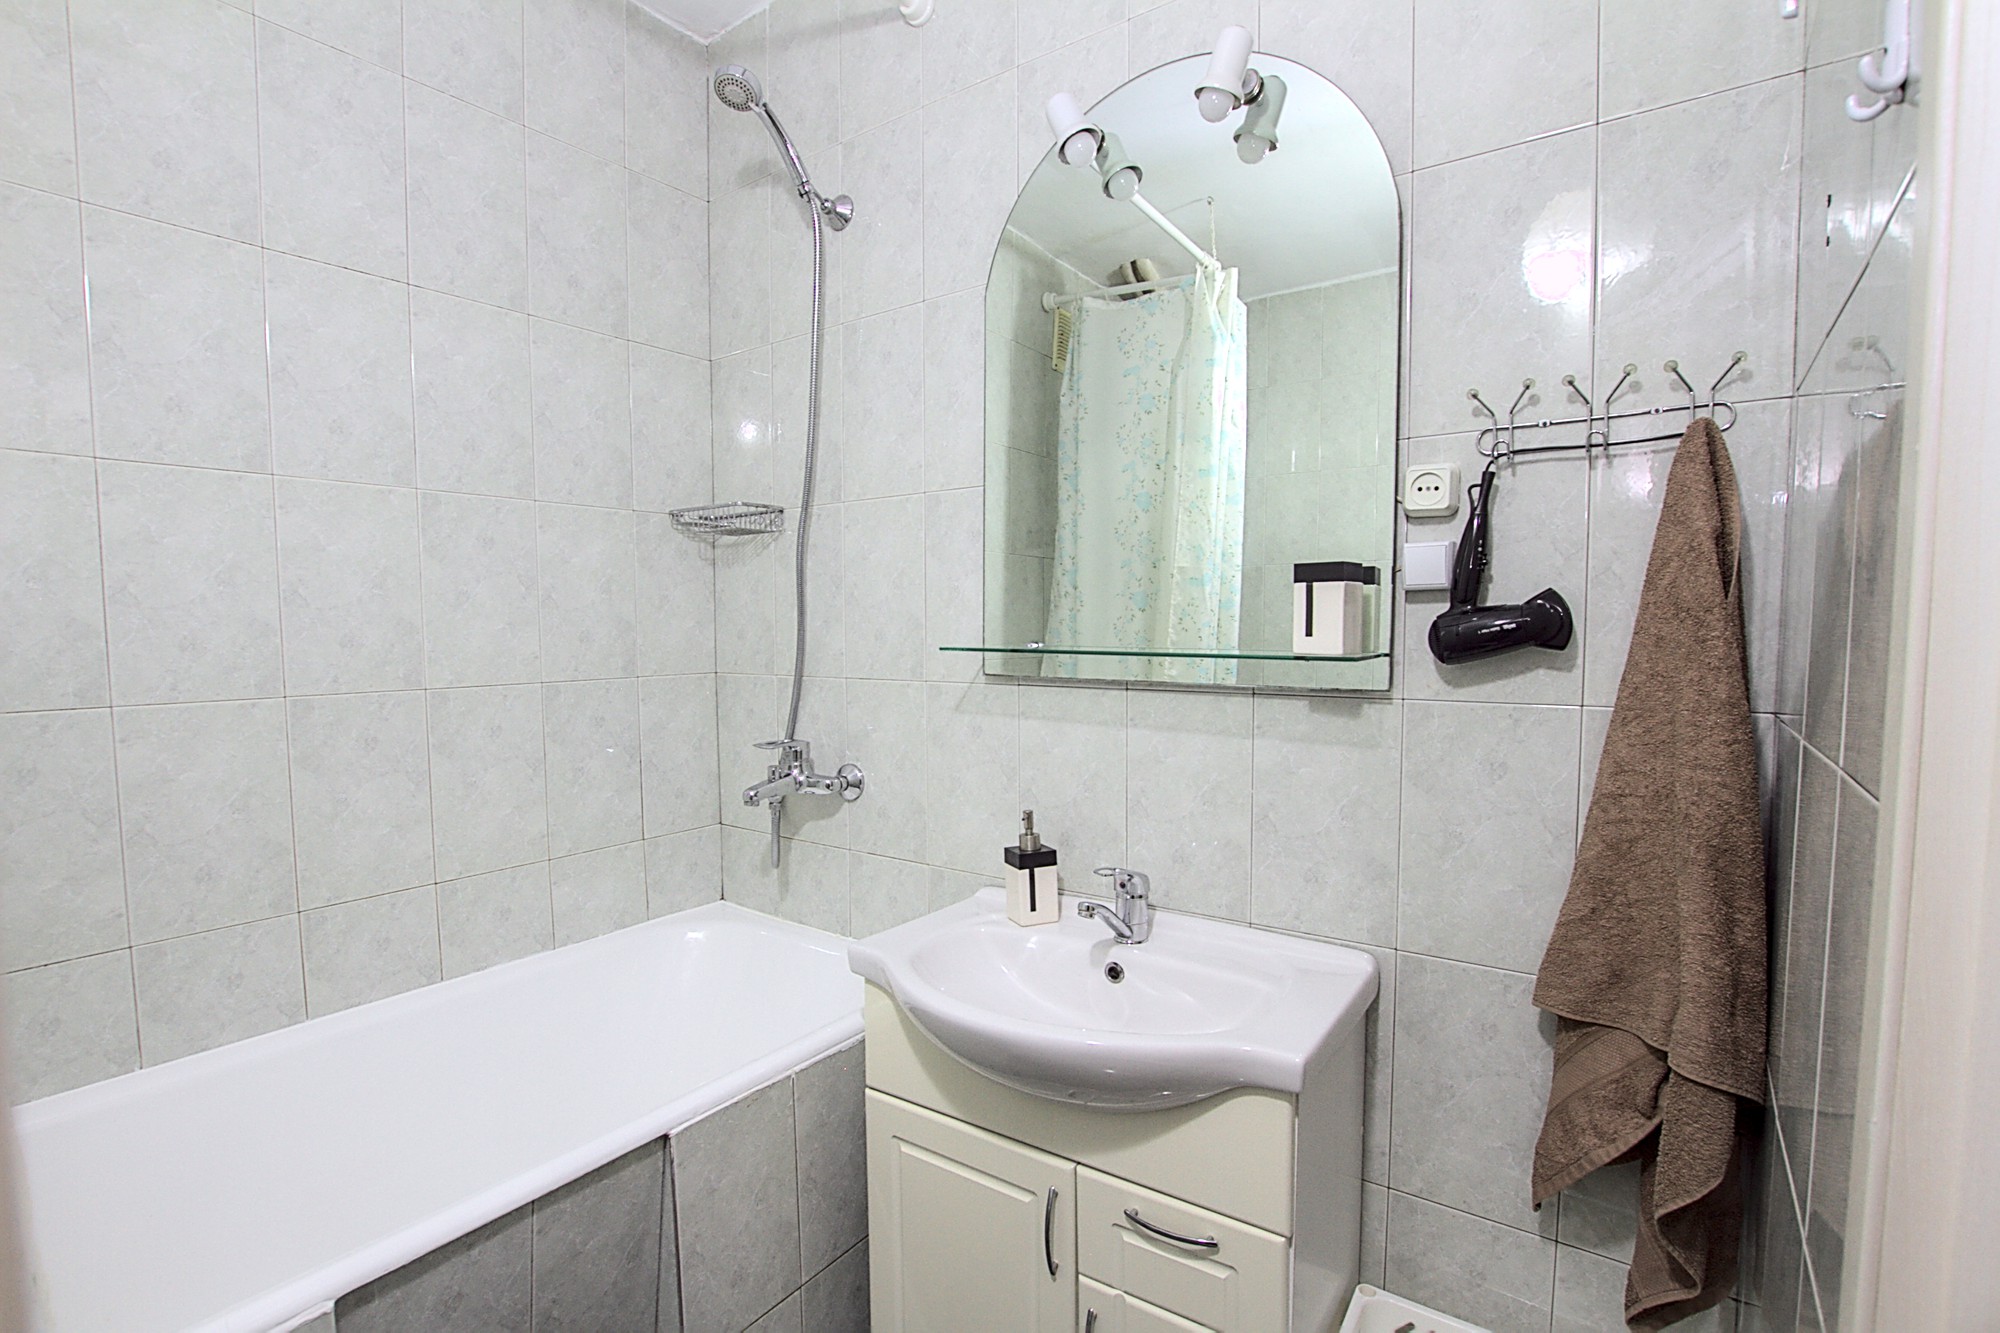 Boulevard Apartment es un apartamento de 1 habitación en alquiler en Chisinau, Moldova